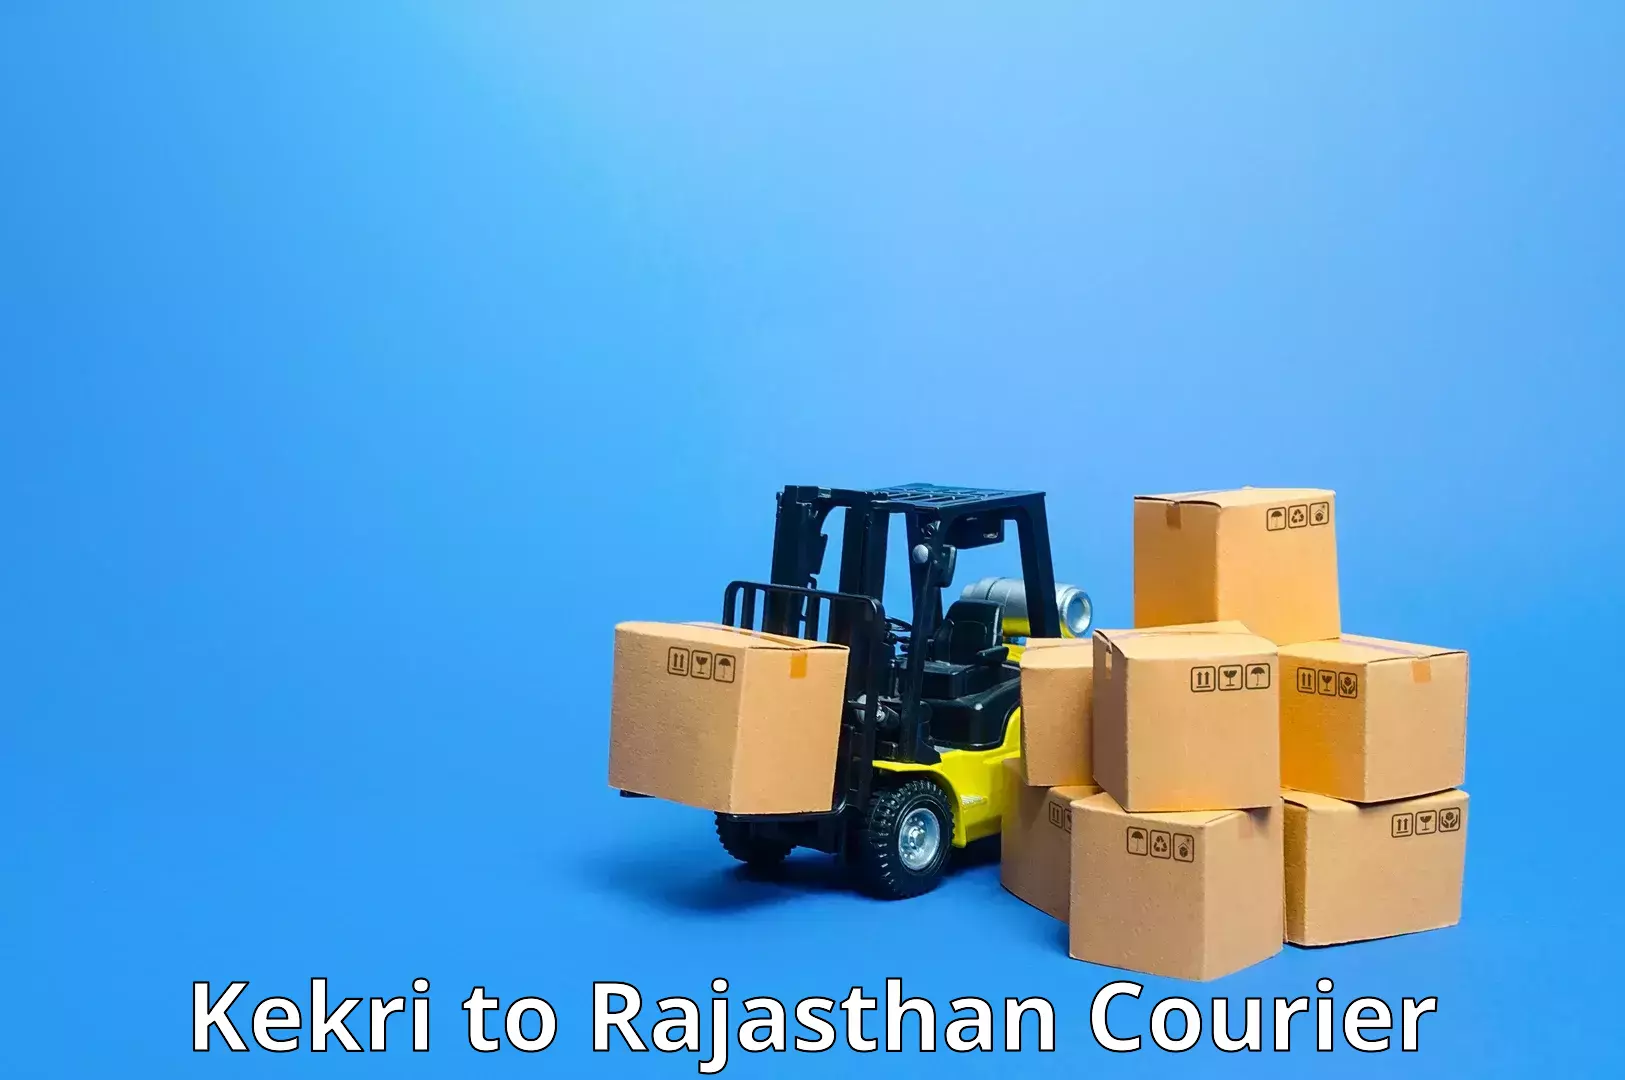 Customizable delivery plans Kekri to Tibbi